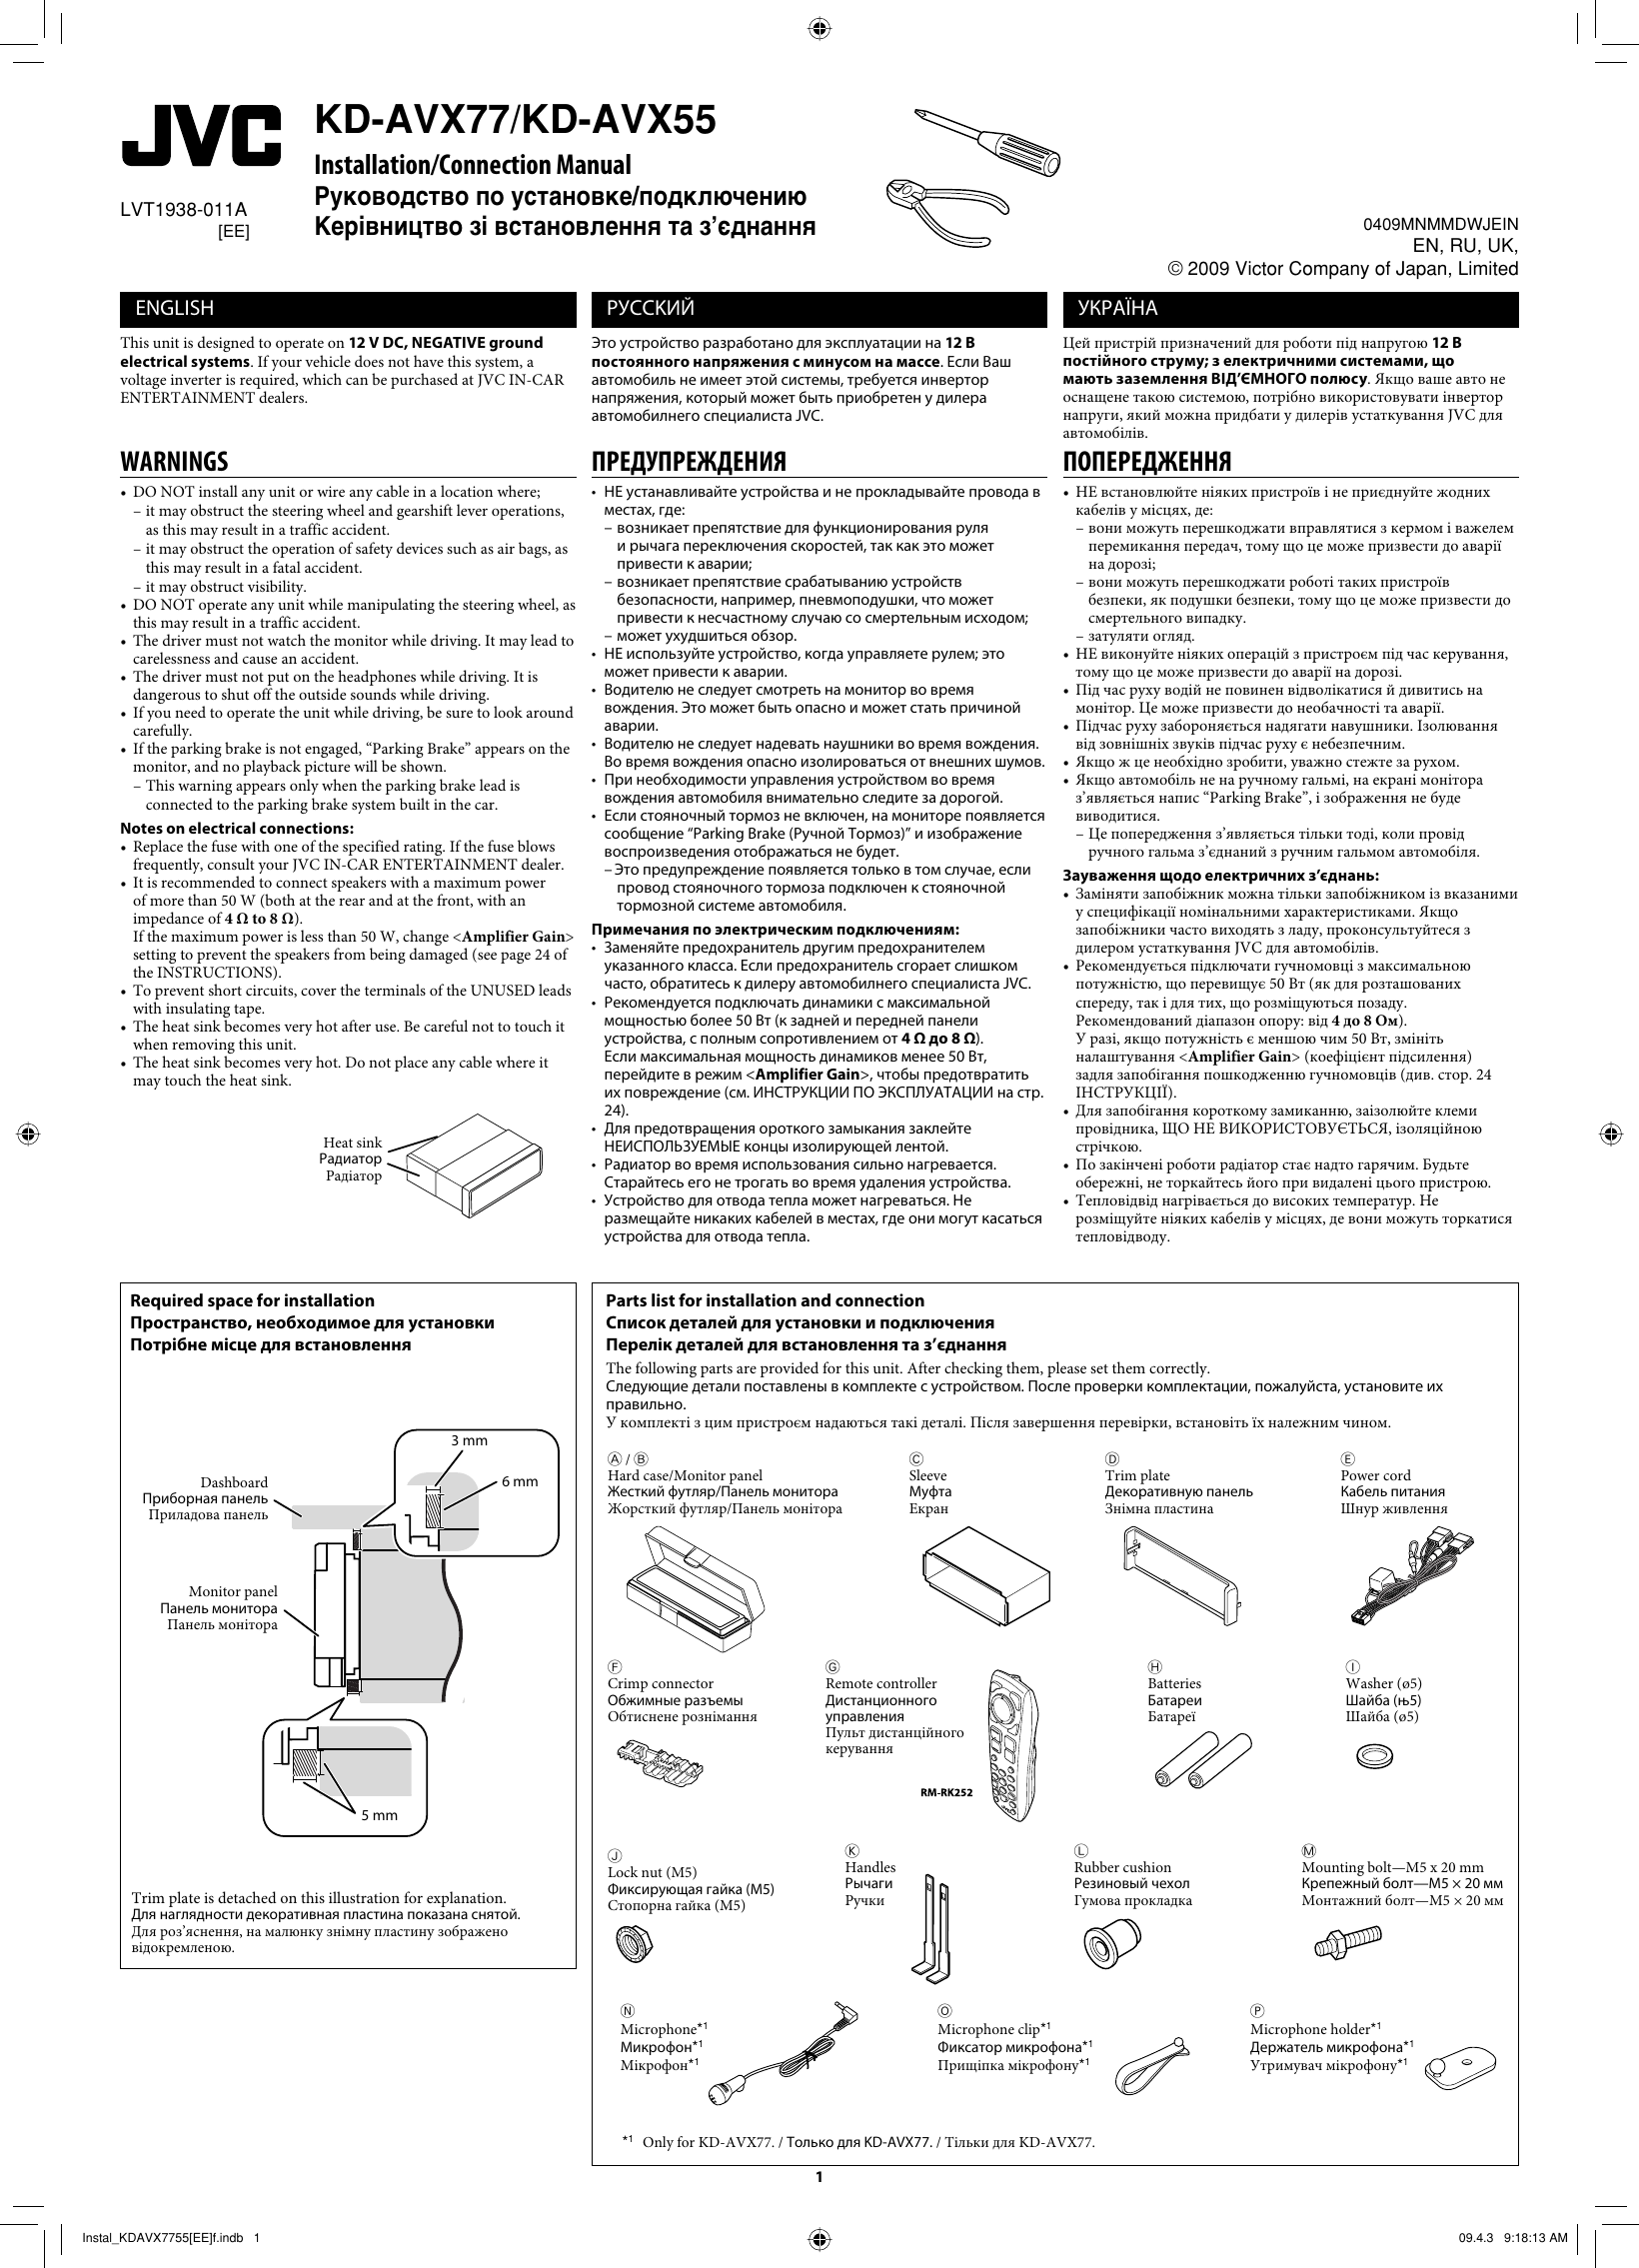 Page 1 of 6 - JVC KD-AVX55EE KD-AVX77/KD-AVX55 User Manual KD-AVX55EE, KD-AVX77EE LVT1938-011A